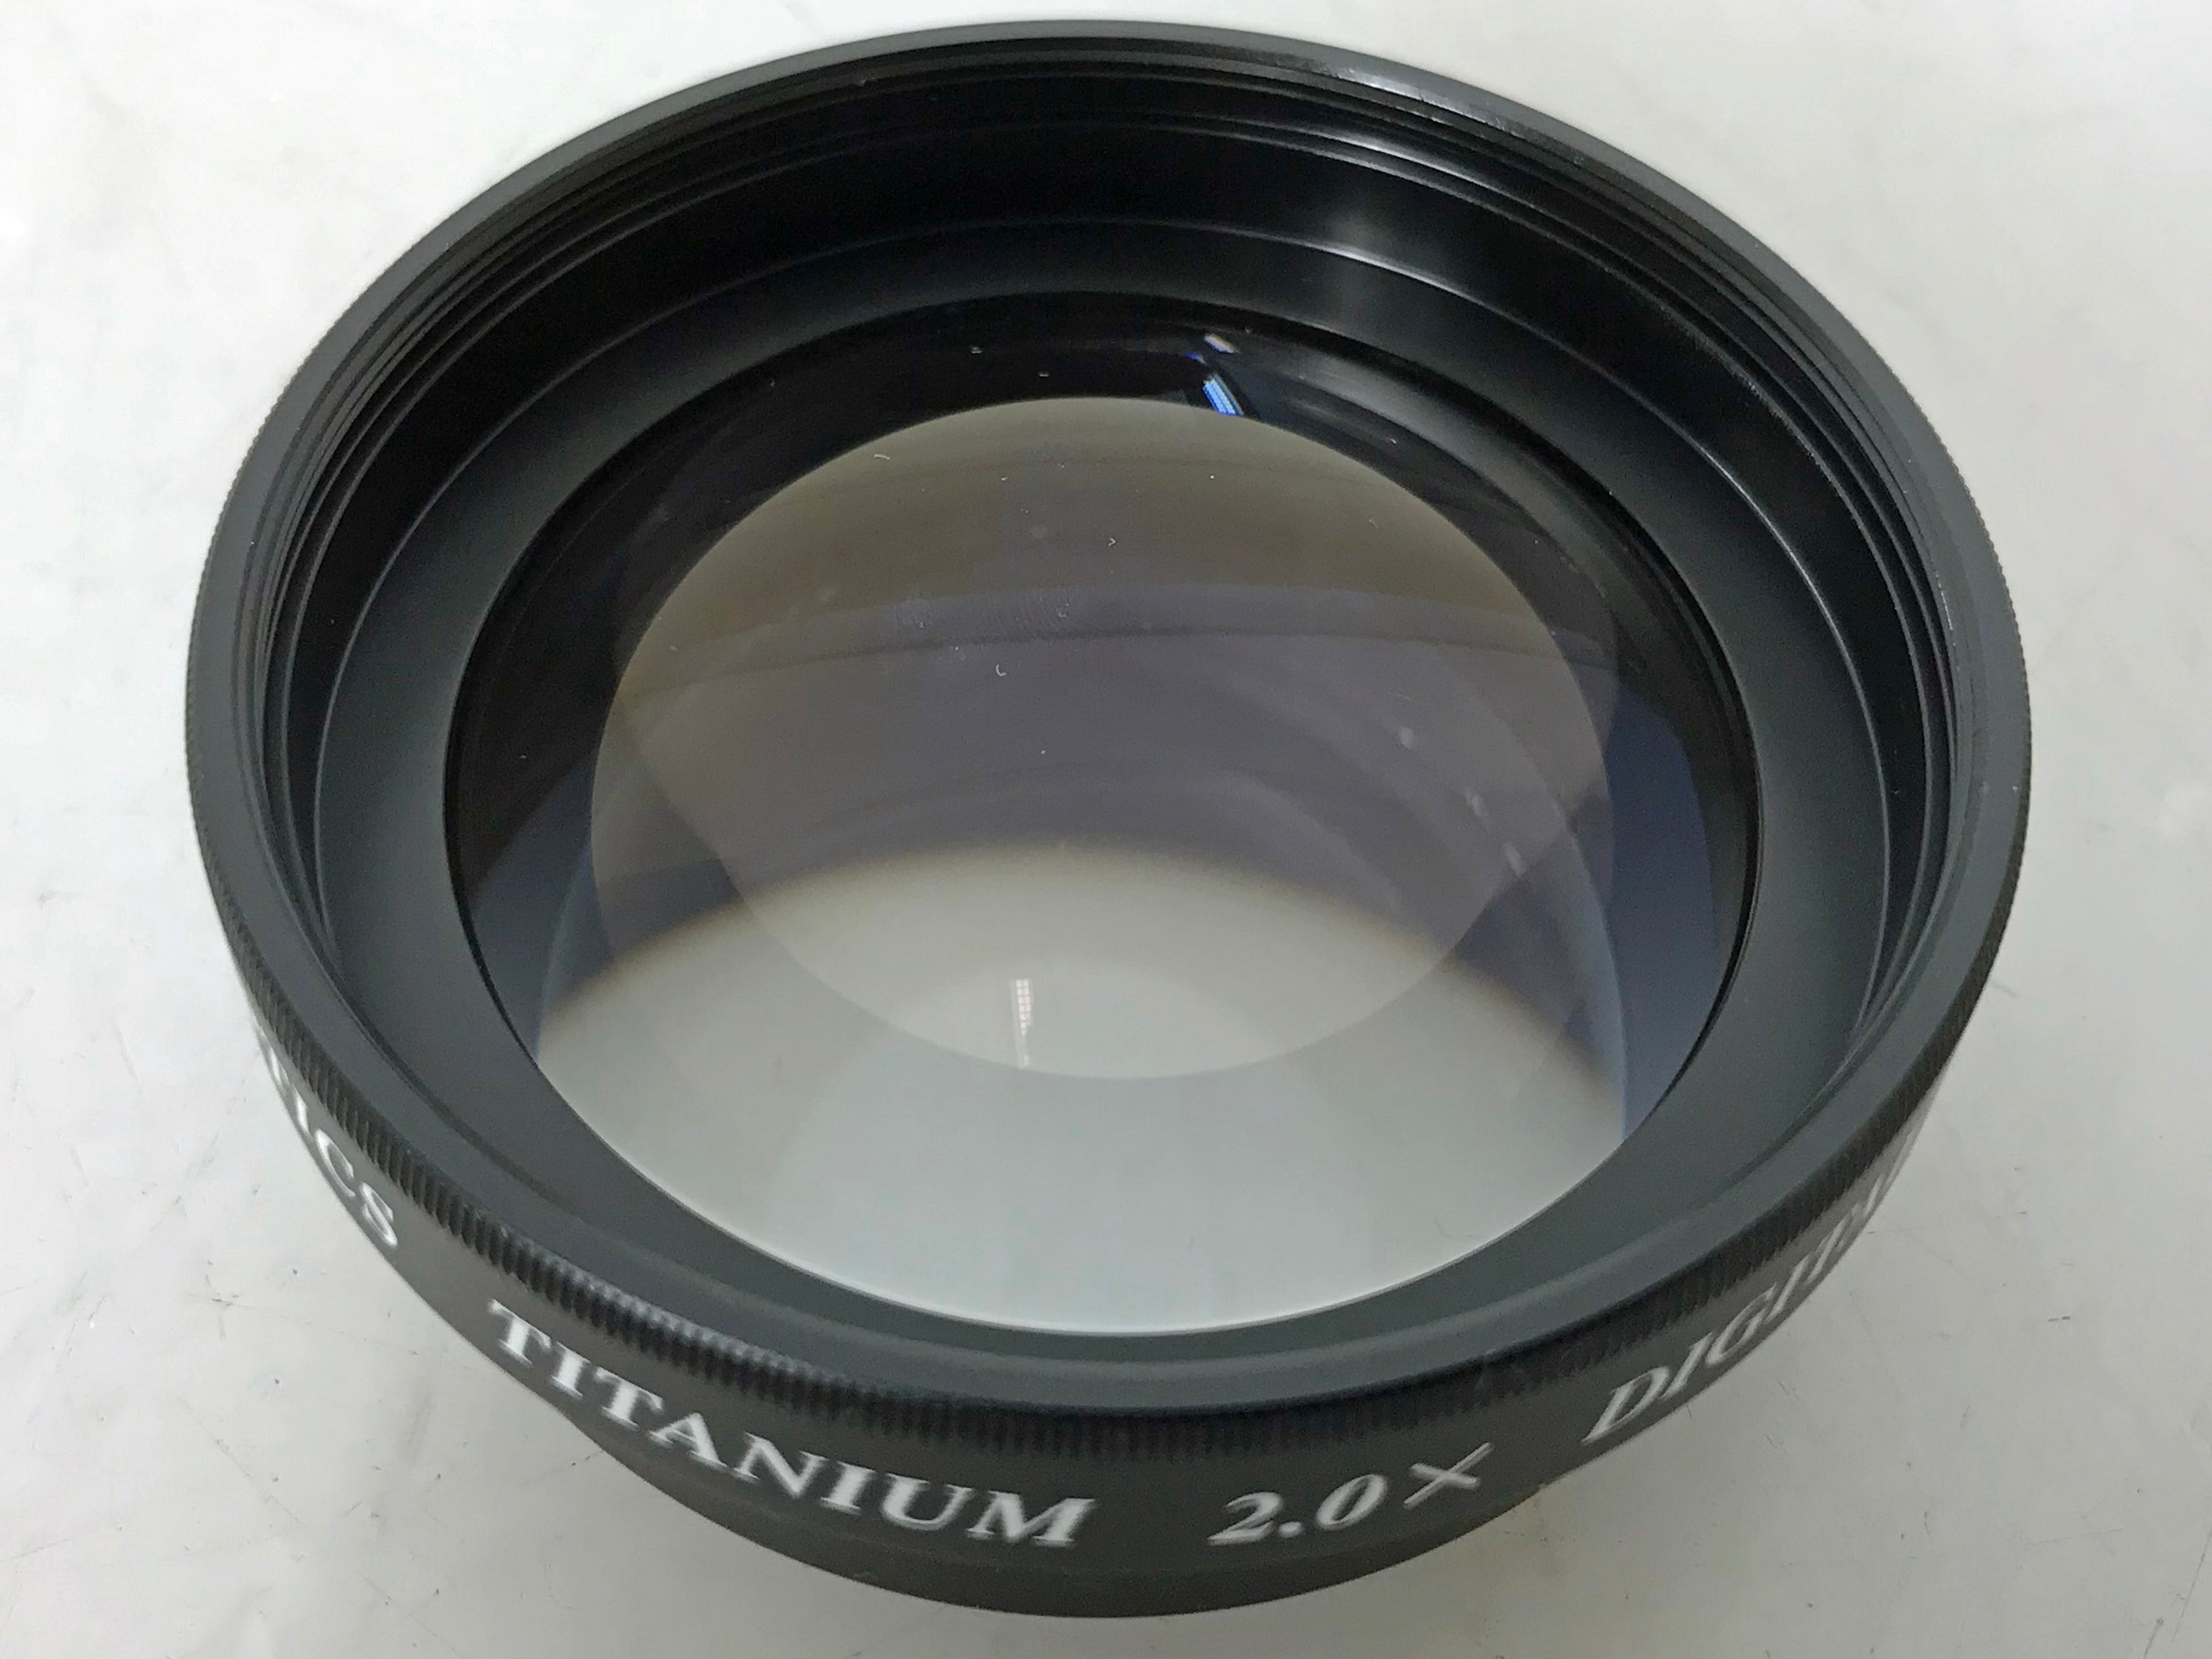 Vision Optics Titanium 2.0x Digital Tele Lens